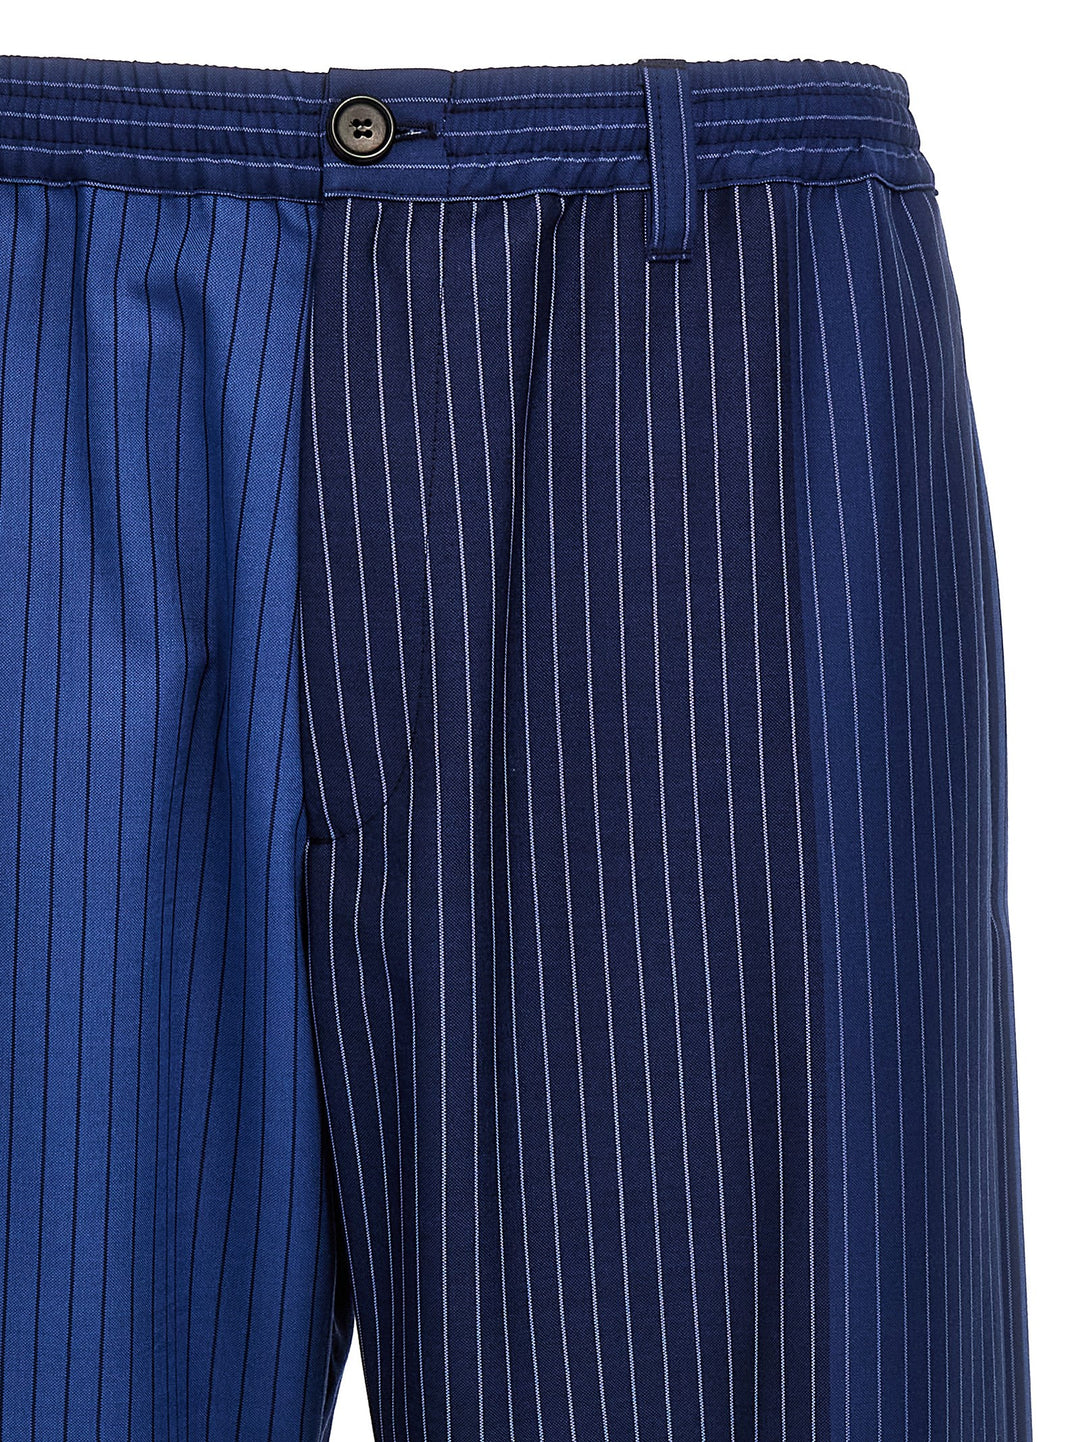 Striped Pantaloni Blu